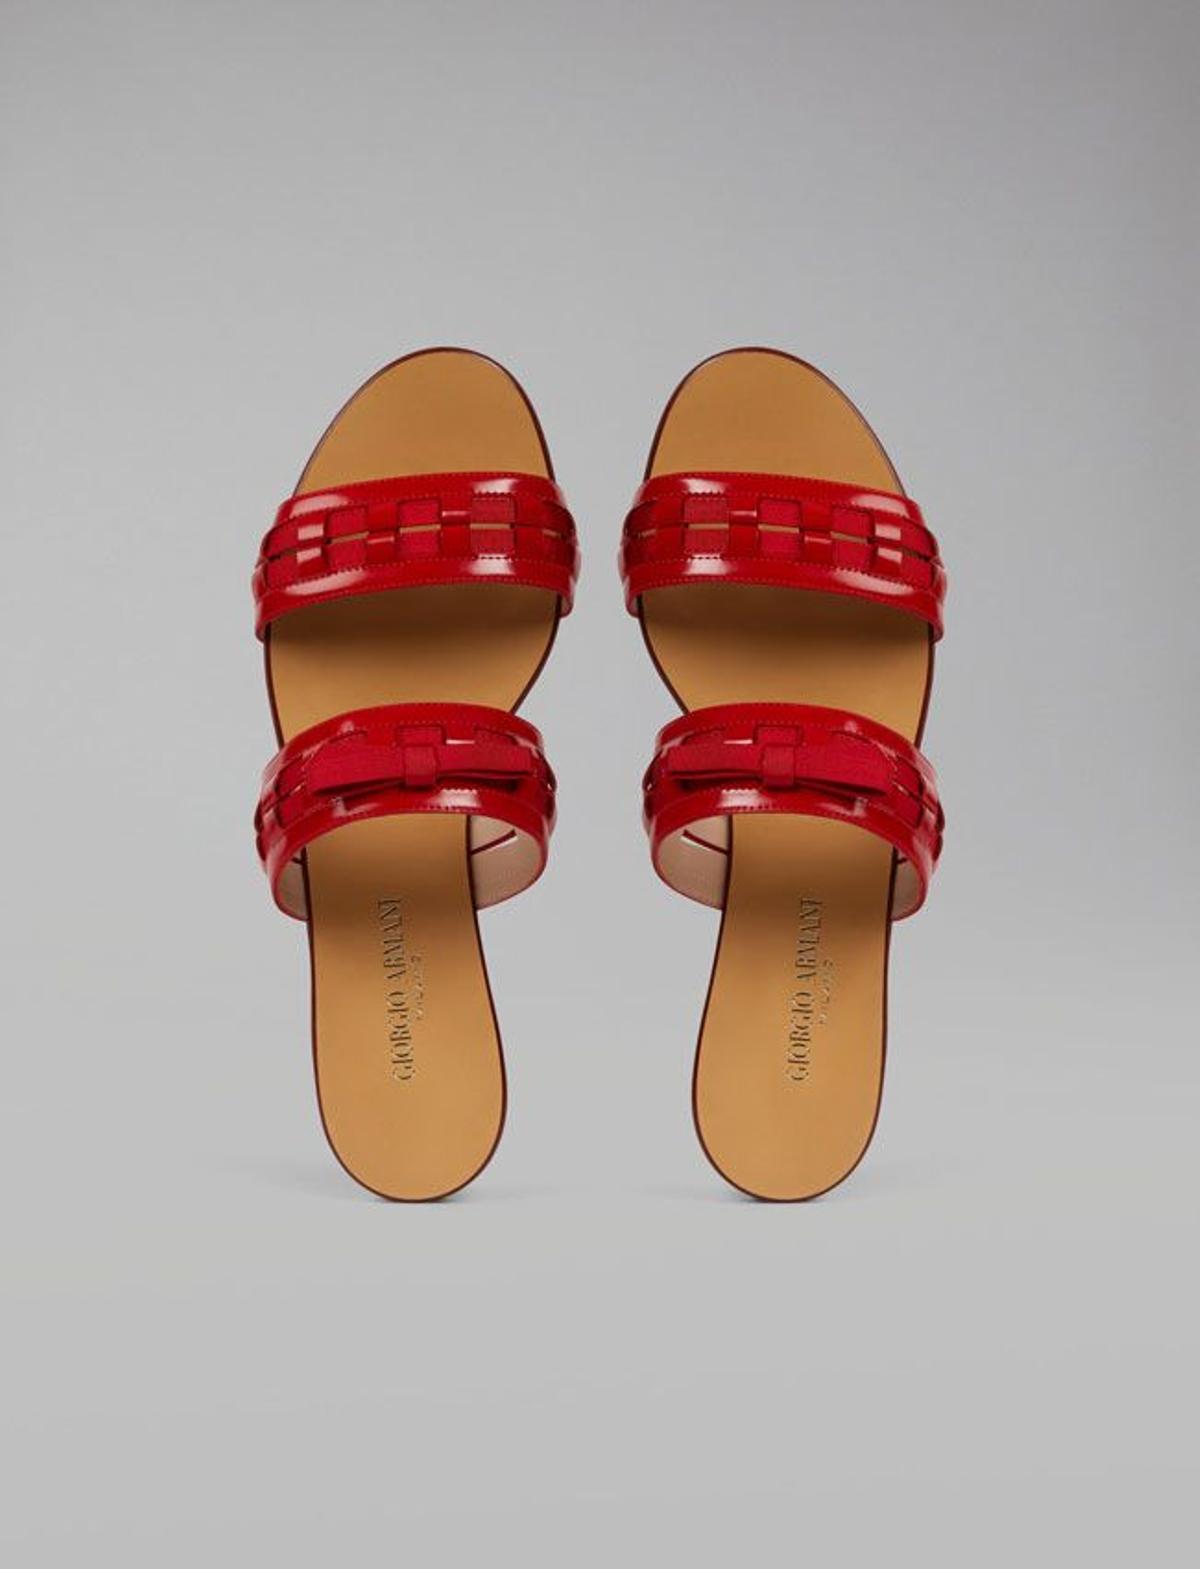 Rebajas calzado: sandalias de Armani